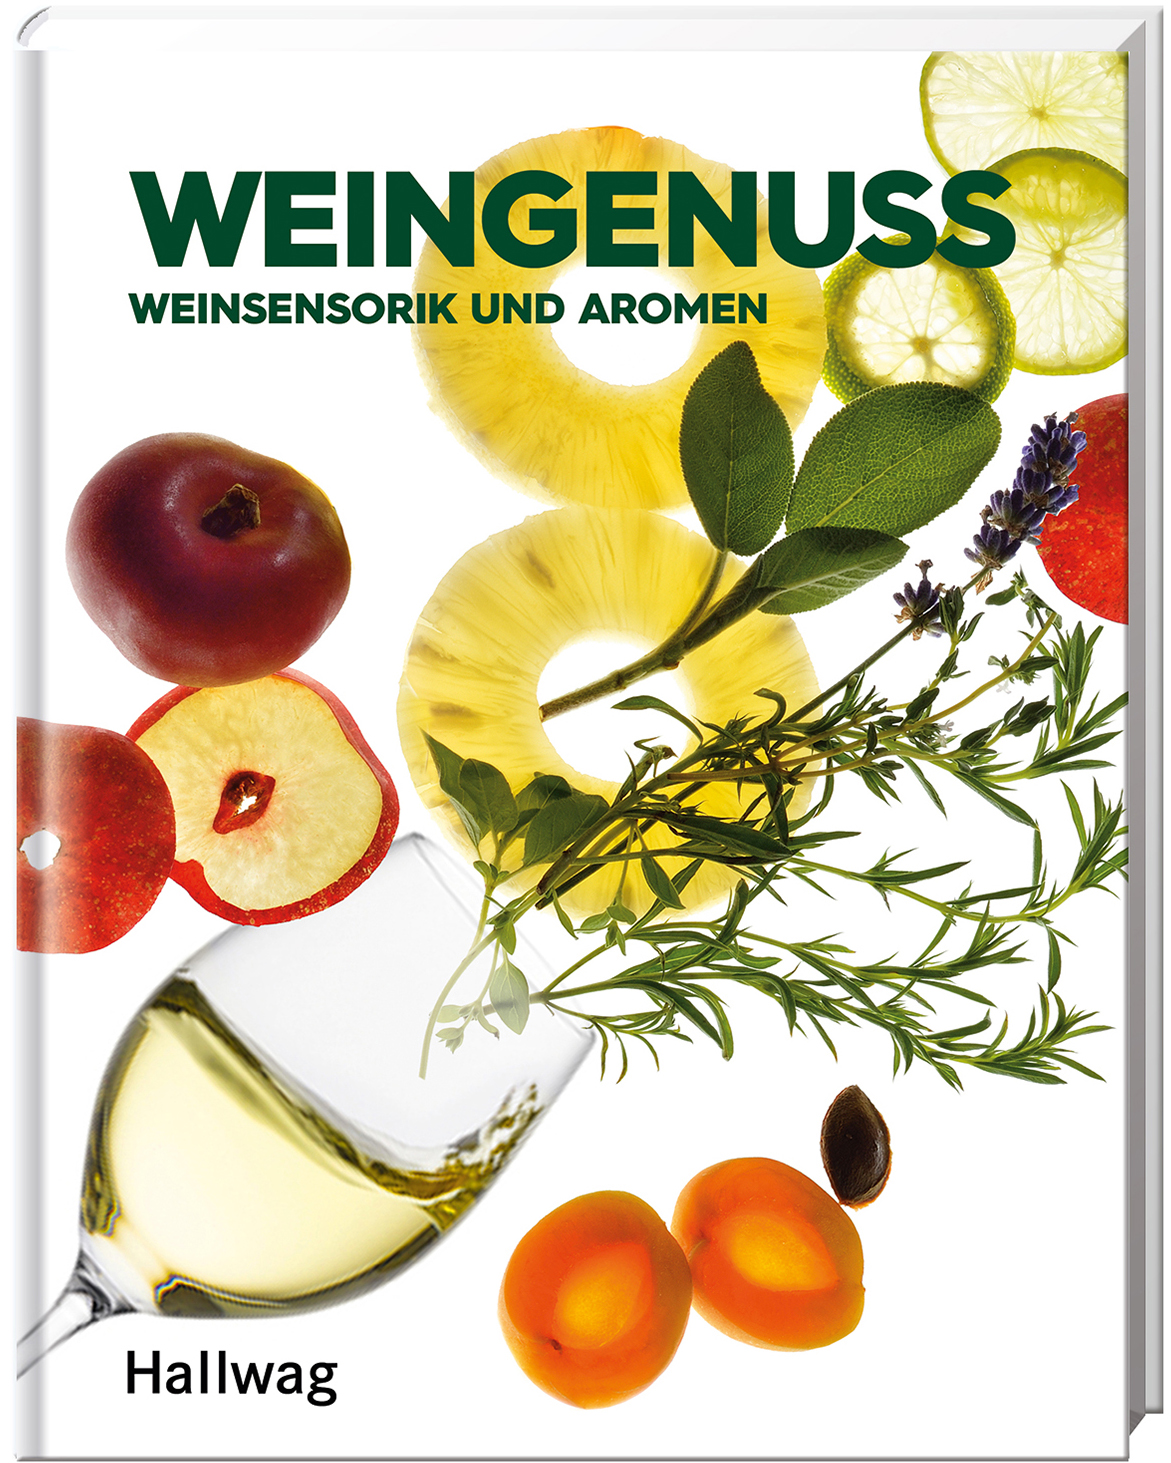 Weingenuss - Weinsensorik und Aromen (Hallwag Die Taschenführer)